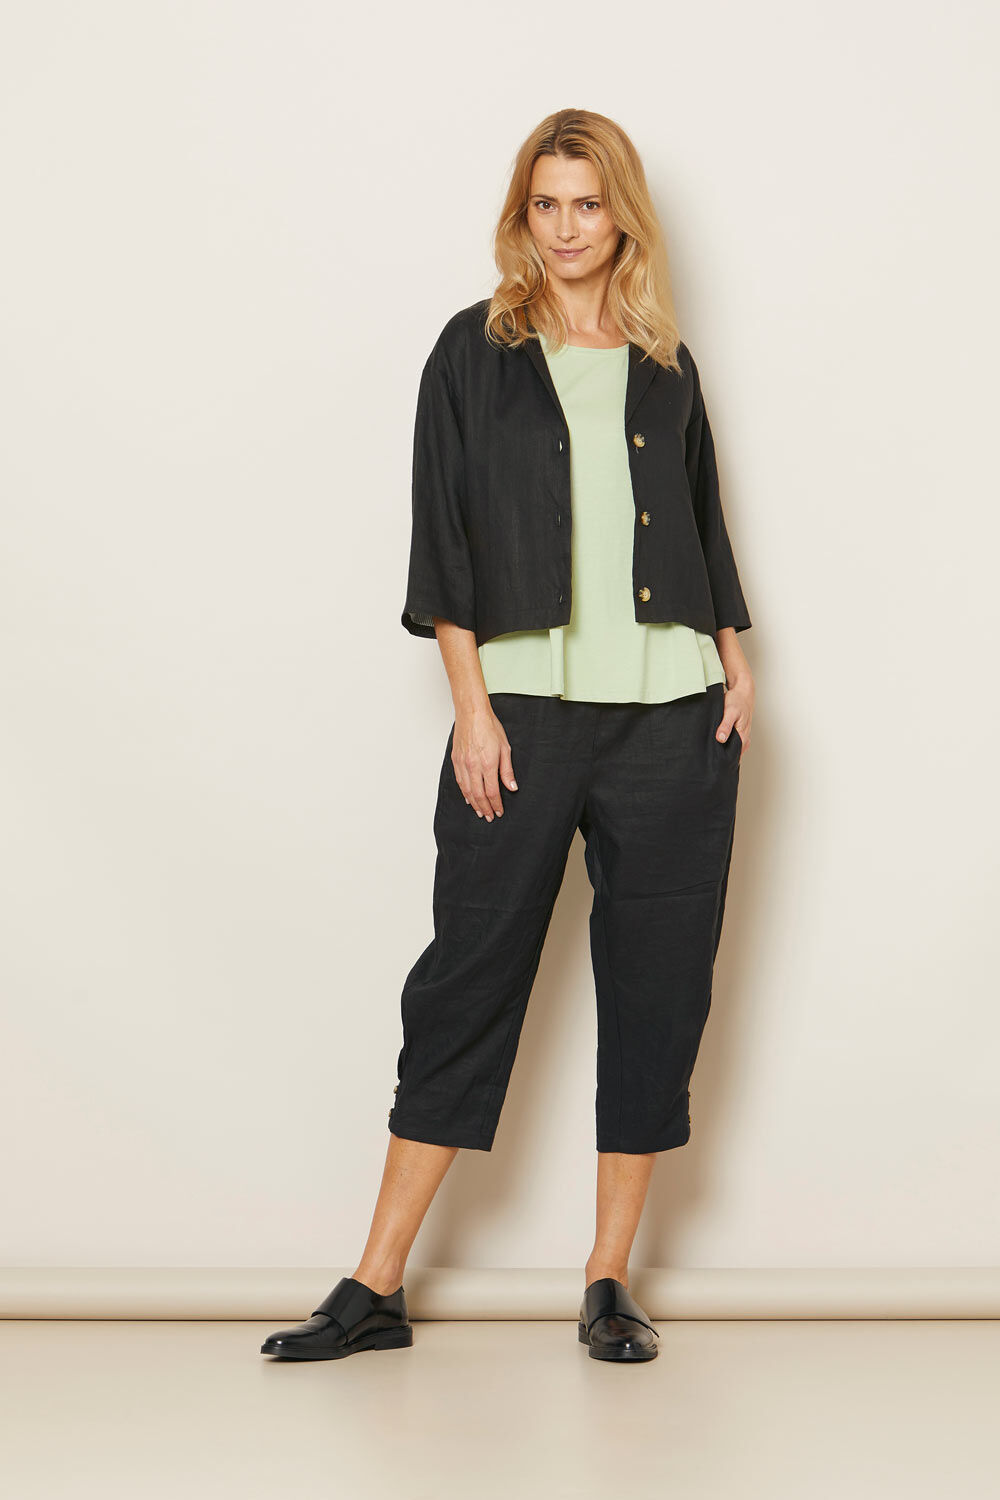 Free People Women's Lotta Love Linen Trousers, Black, 0 : Amazon.co.uk:  Fashion